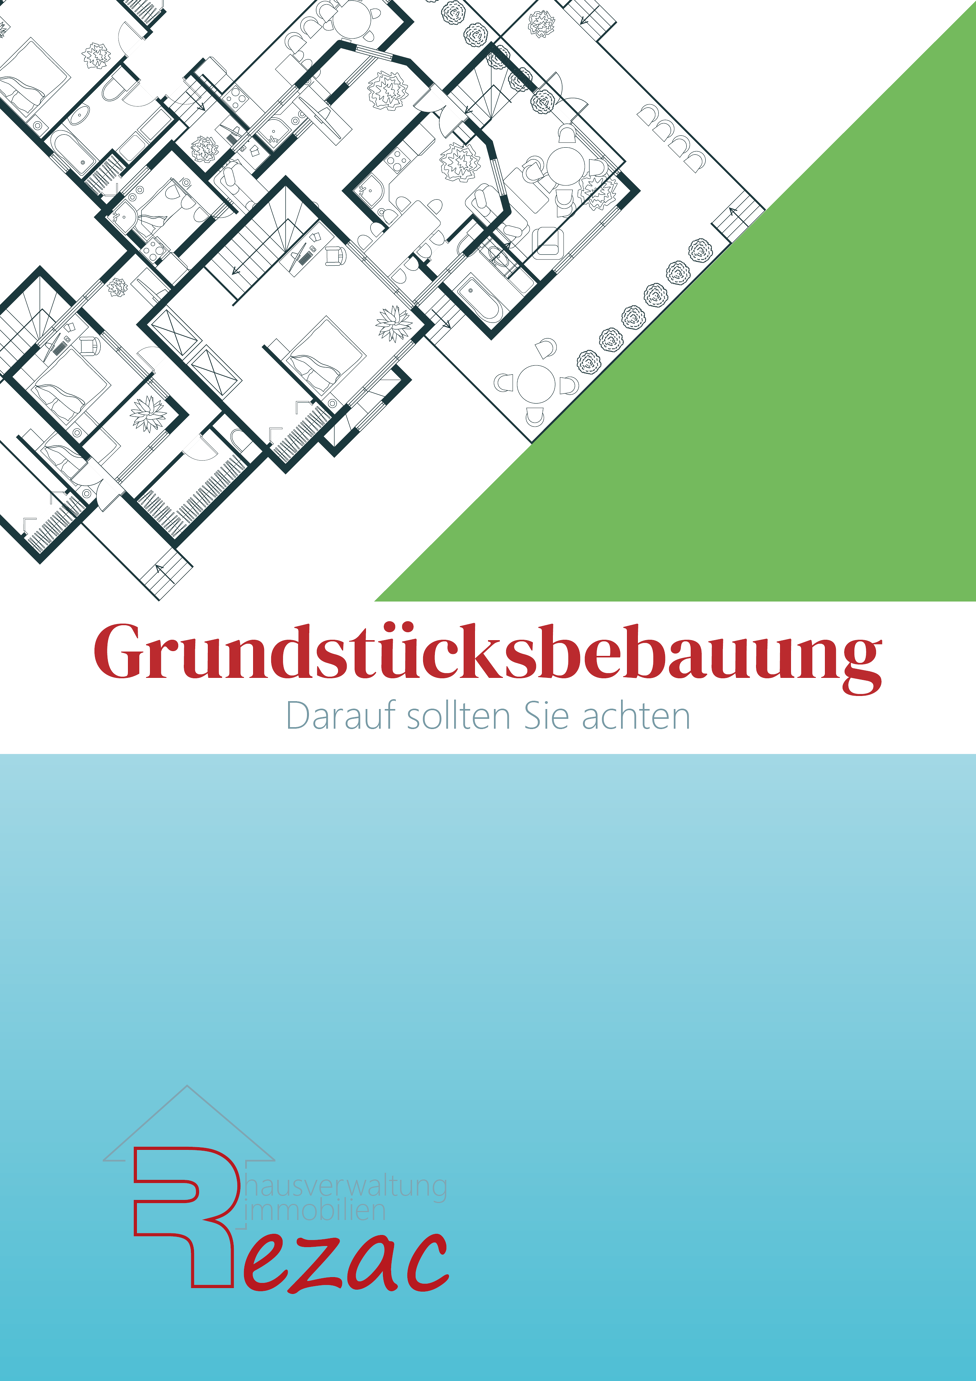 Coverbild des E-Books 'Grundstücksbebauung - Darauf sollten Sie achten' von Rezac